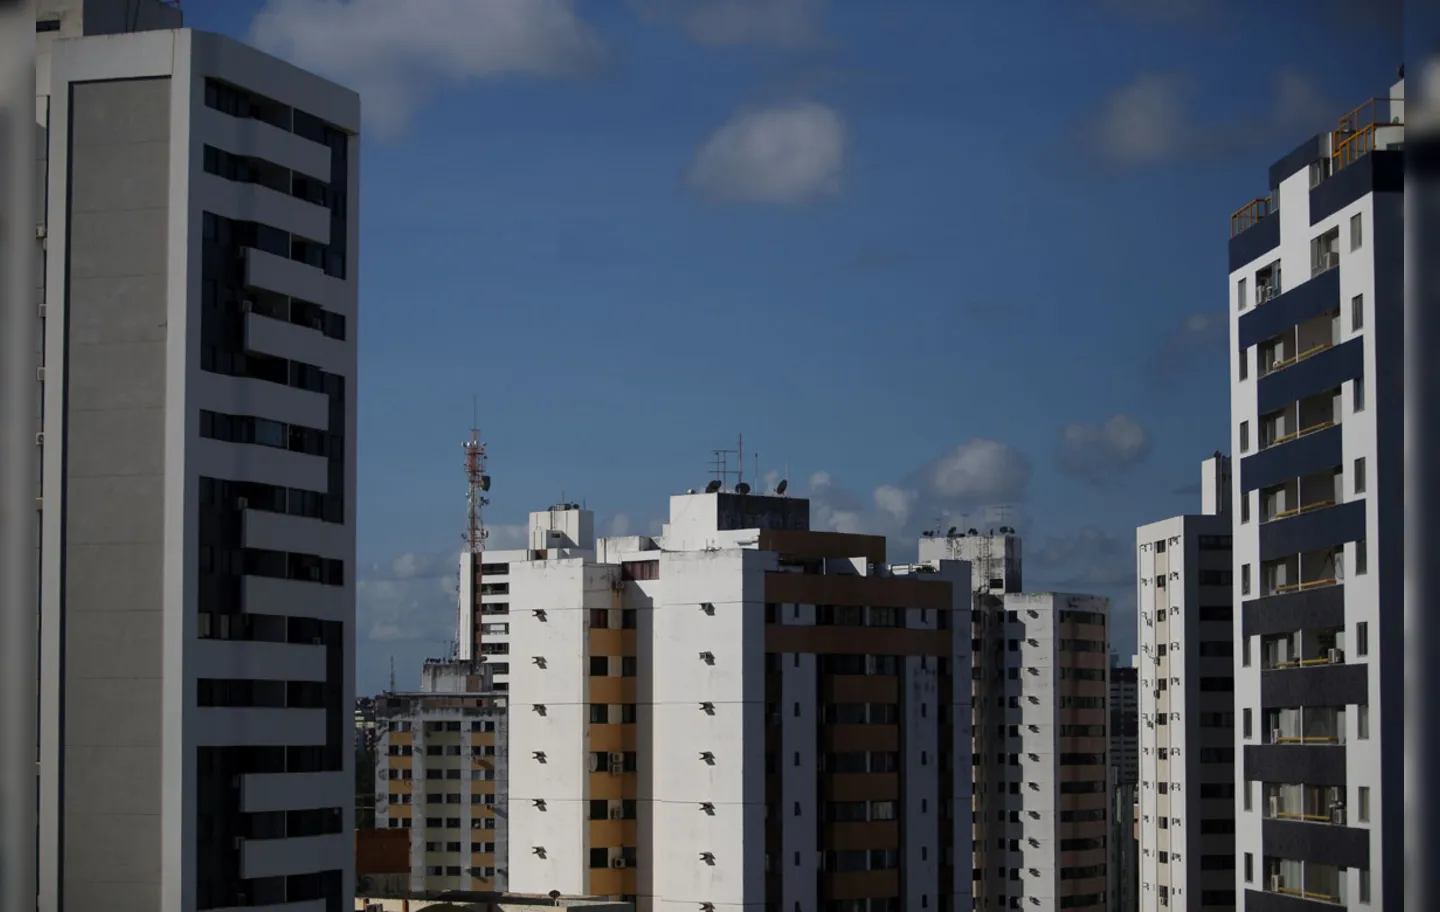 O valor mais alto do metro quadrado para aluguel está em Ondina (R$ 48,46) | Foto: Rafael Martins | Ag. A TARDE